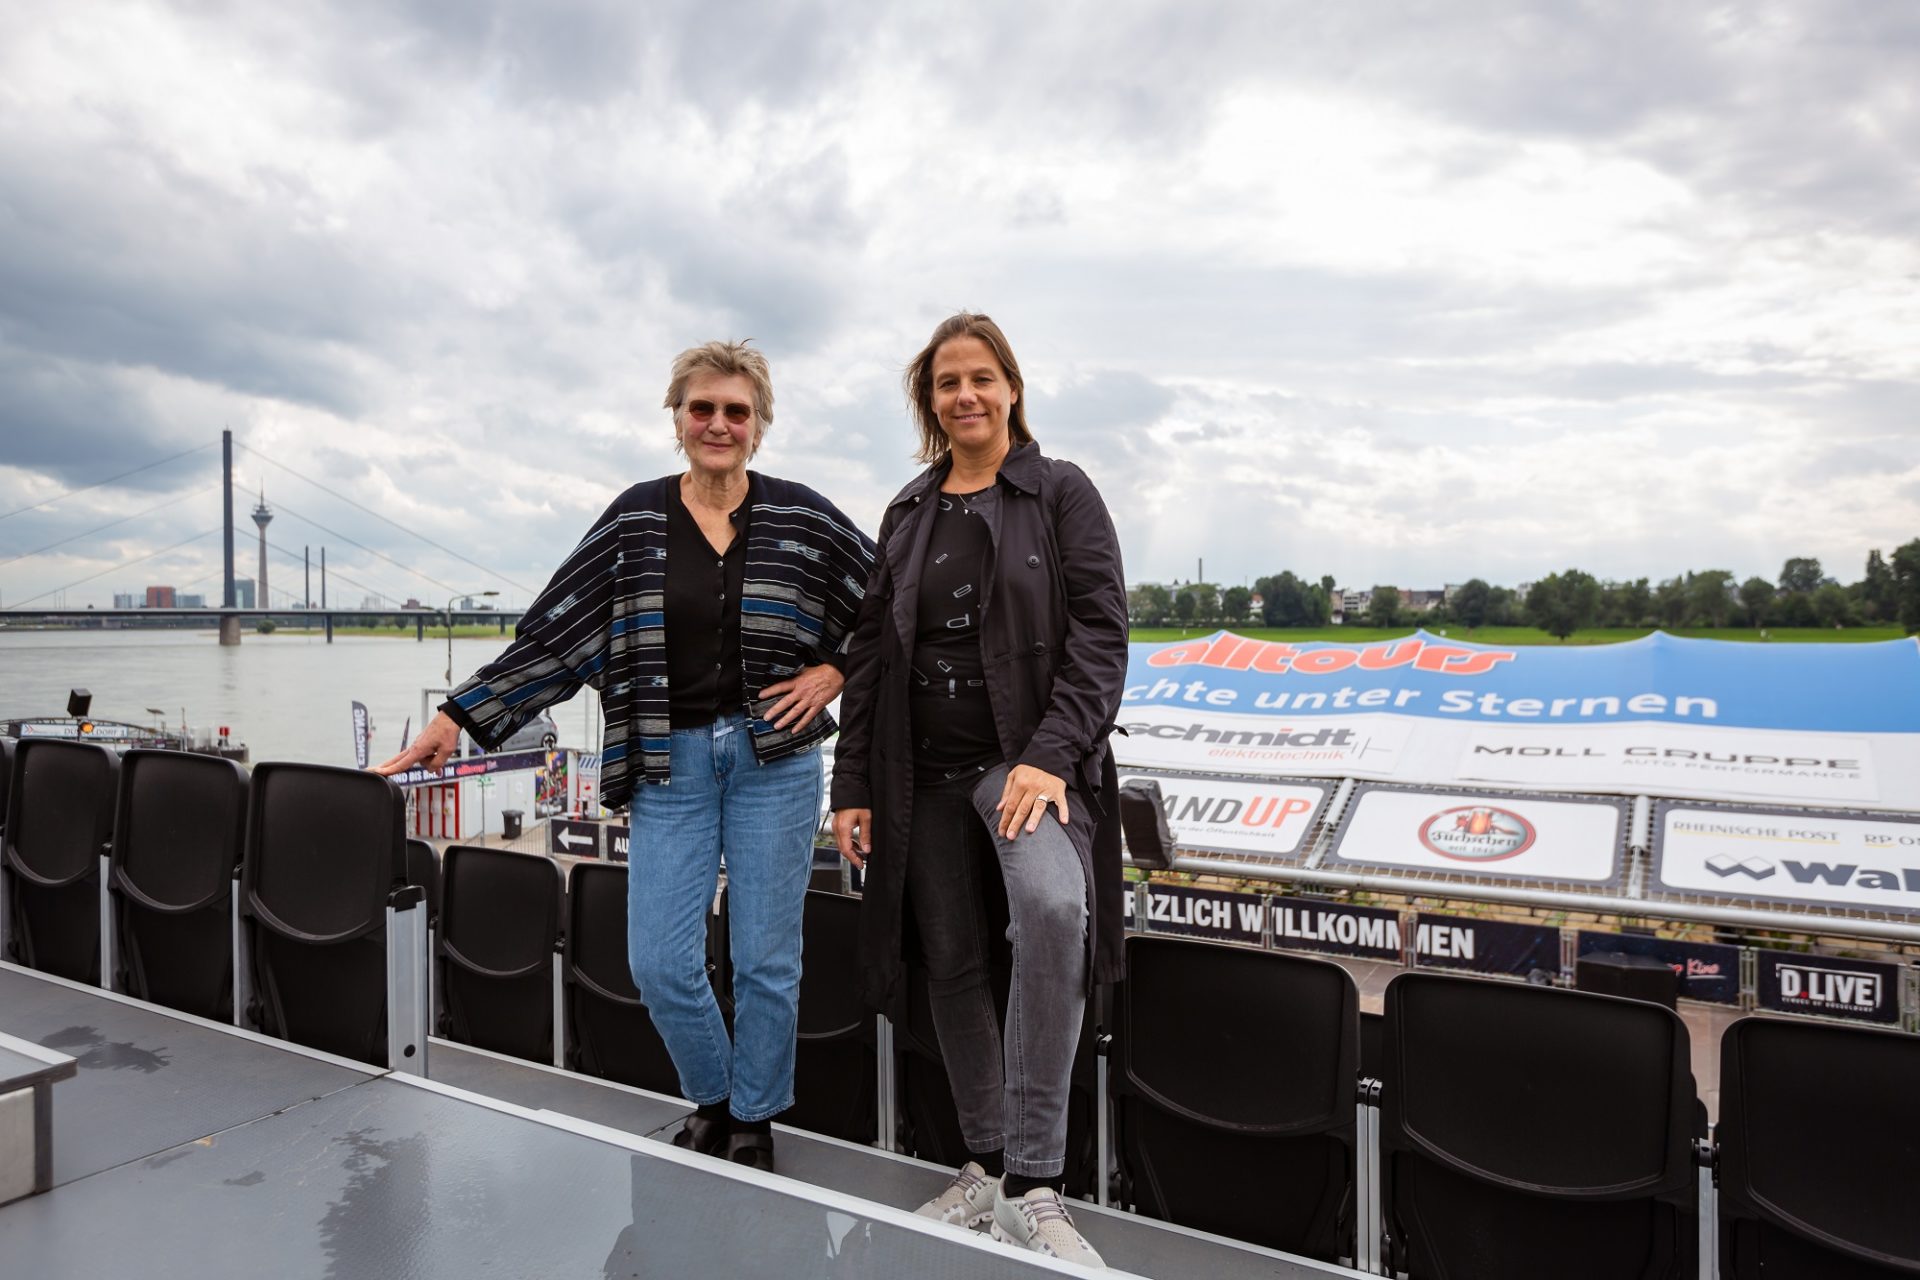 Seit 27 Jahren ist Rosemarie Schatter (links) für das Programm im Düsseldorfer Open-Air-Kino verantwortlich. Heute arbeitet sie mit Daniela Stork von der städtischen Veranstaltungstochter D.Live zusammen. Foto: Johannes Boventer